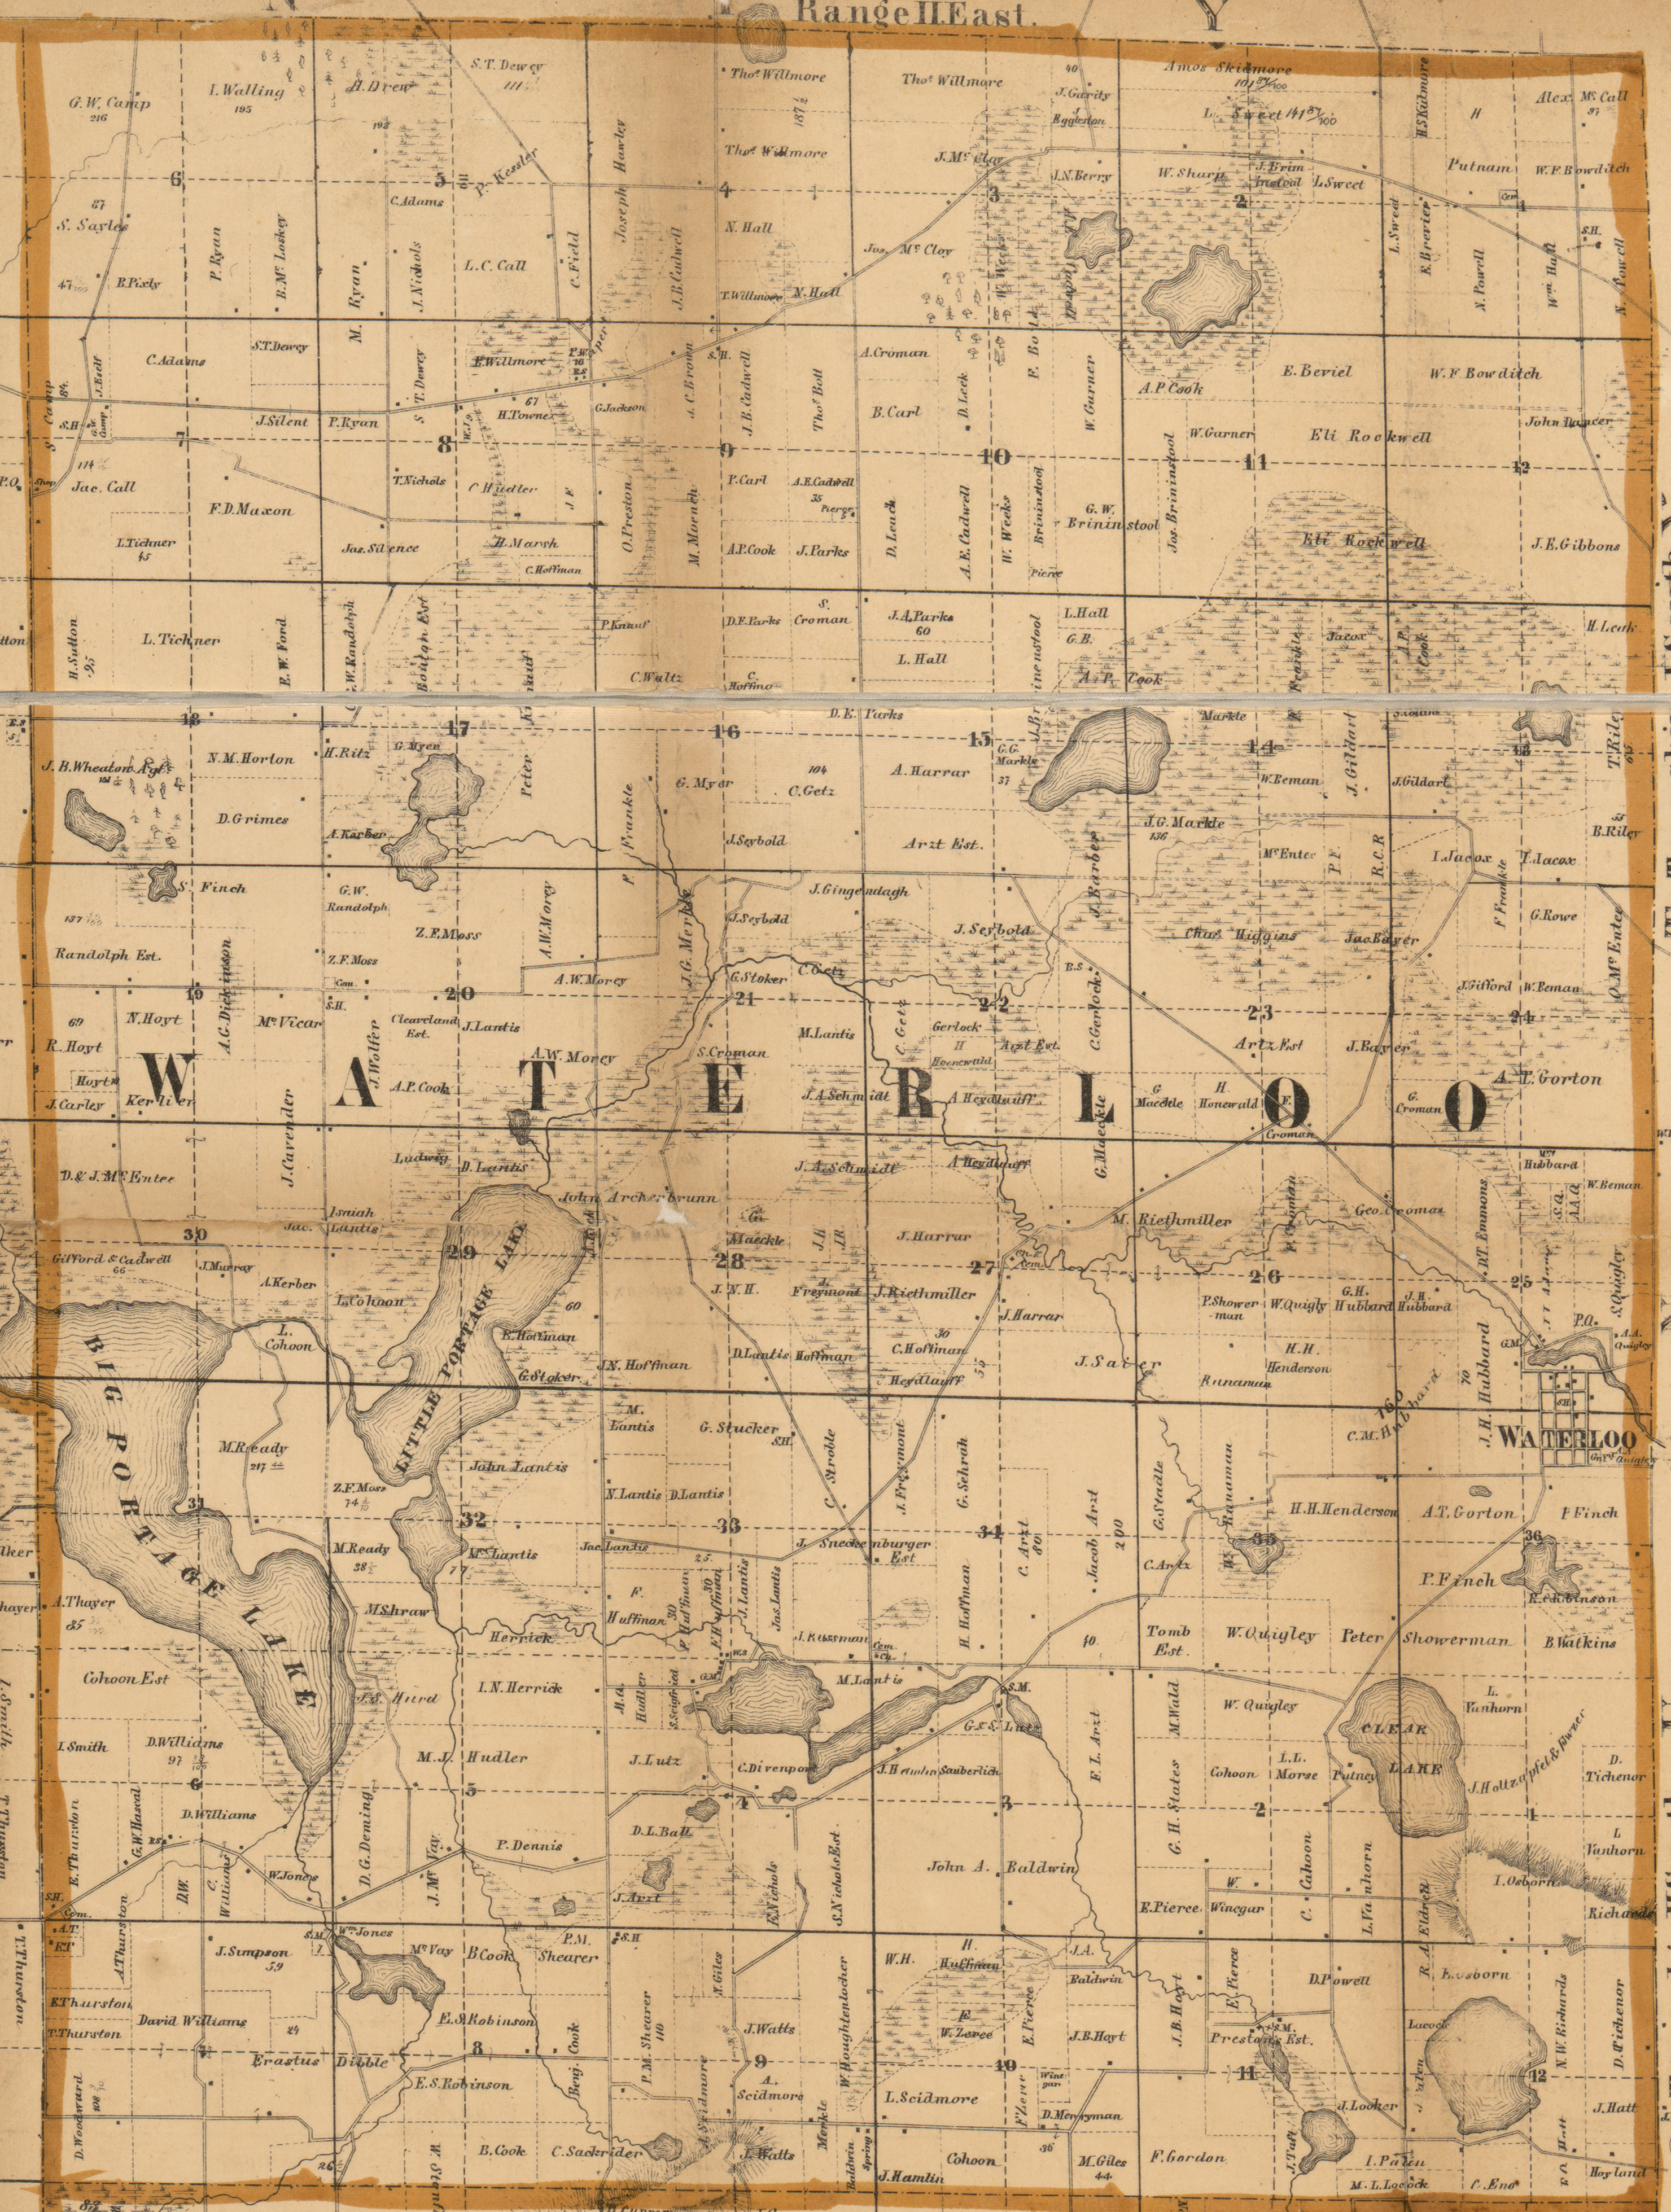 1858 Waterloo Township, Michigan landownership map